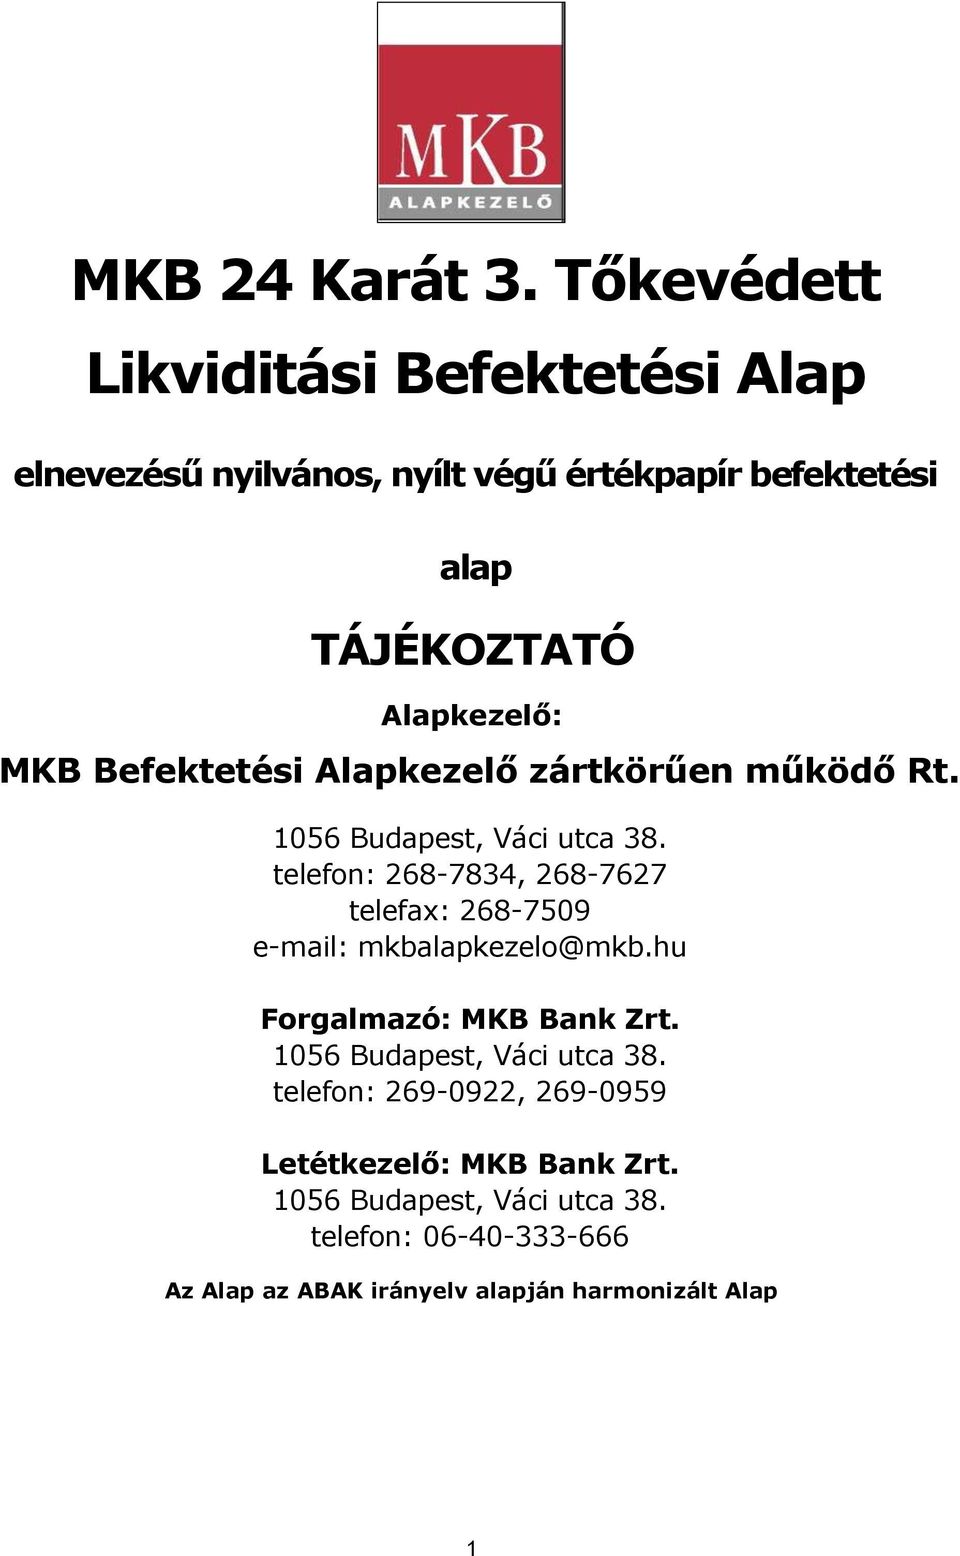 MKB 24 Karát 3. Tőkevédett Likviditási Befektetési Alap - PDF Ingyenes  letöltés